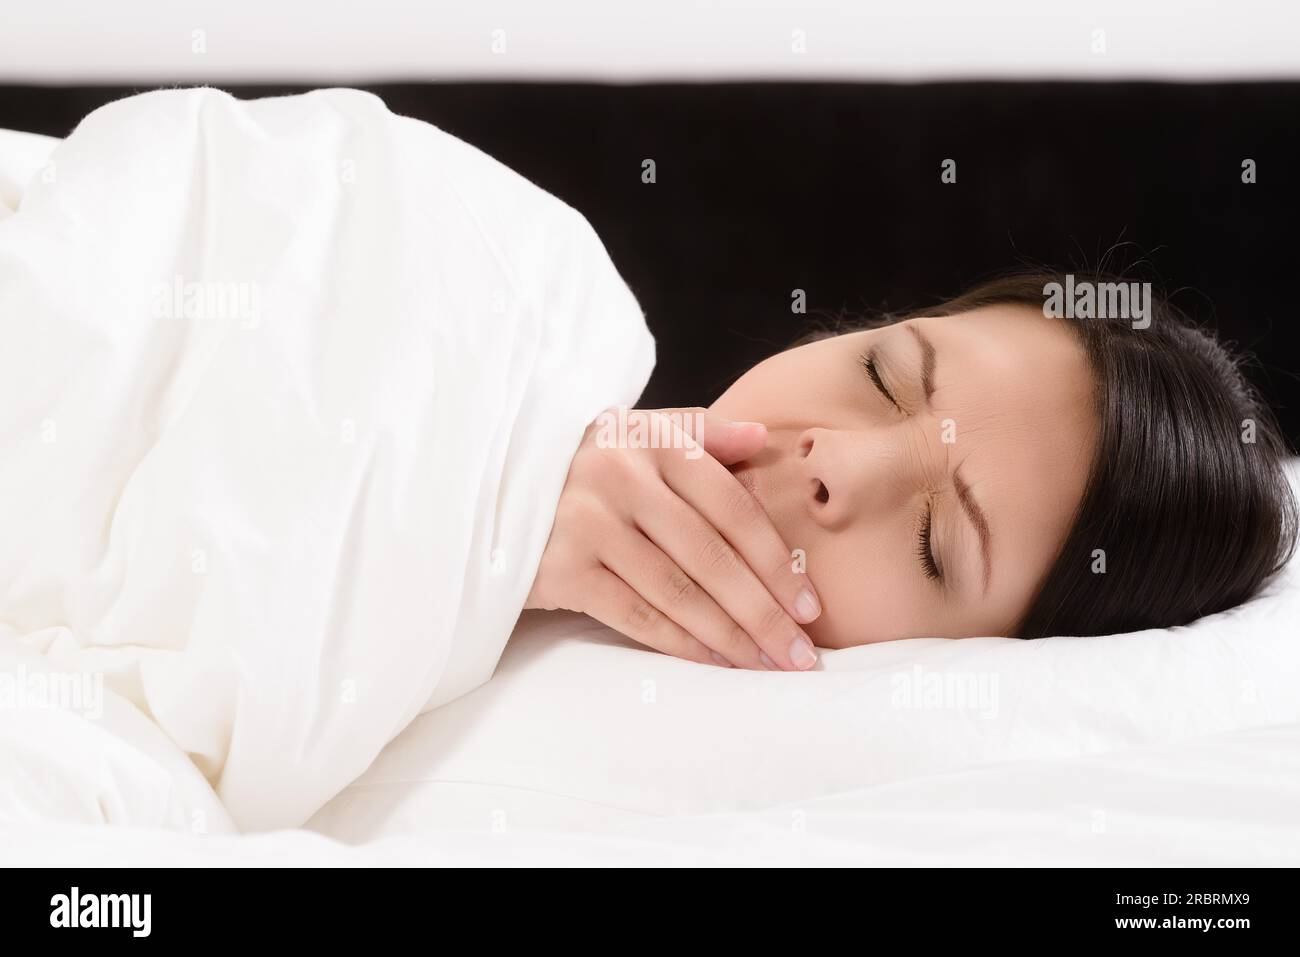 Fatiguée jeune femme attrayante couchée dans le lit bâillant avec sa main à sa bouche et les yeux fermés alors qu'elle se prépare à aller dans un sommeil rafraîchissant pour se détendre Banque D'Images